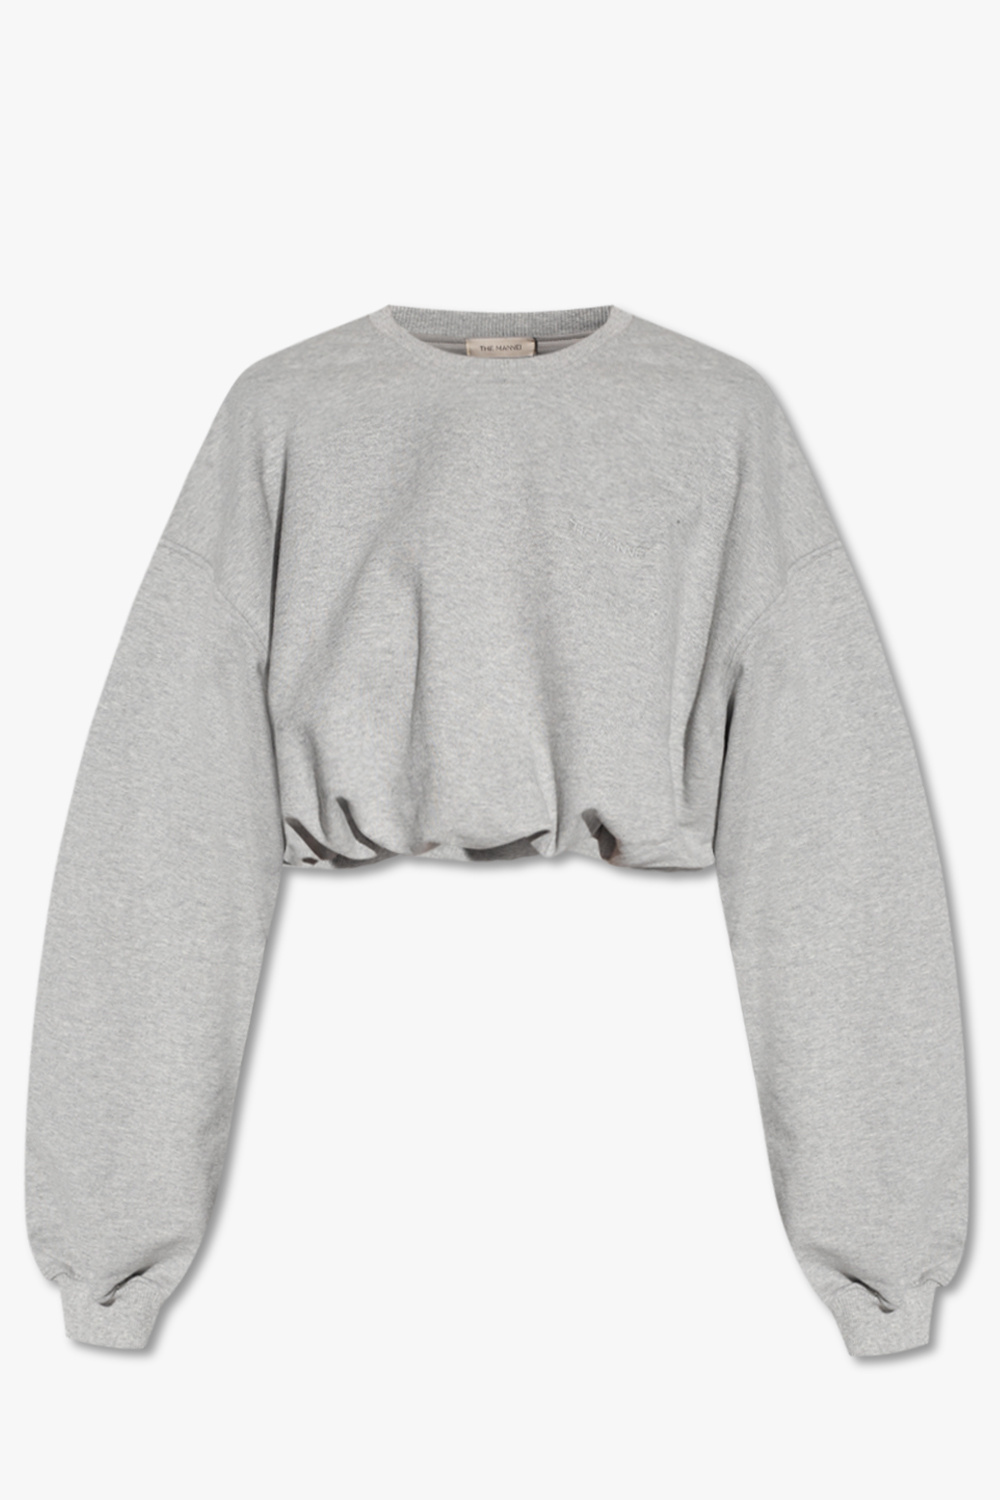 GenesinlifeShops Canada - gray applique essentials fog 3d silicon clothing  charcoal - Grey 'Wula' sweatshirt The Mannei